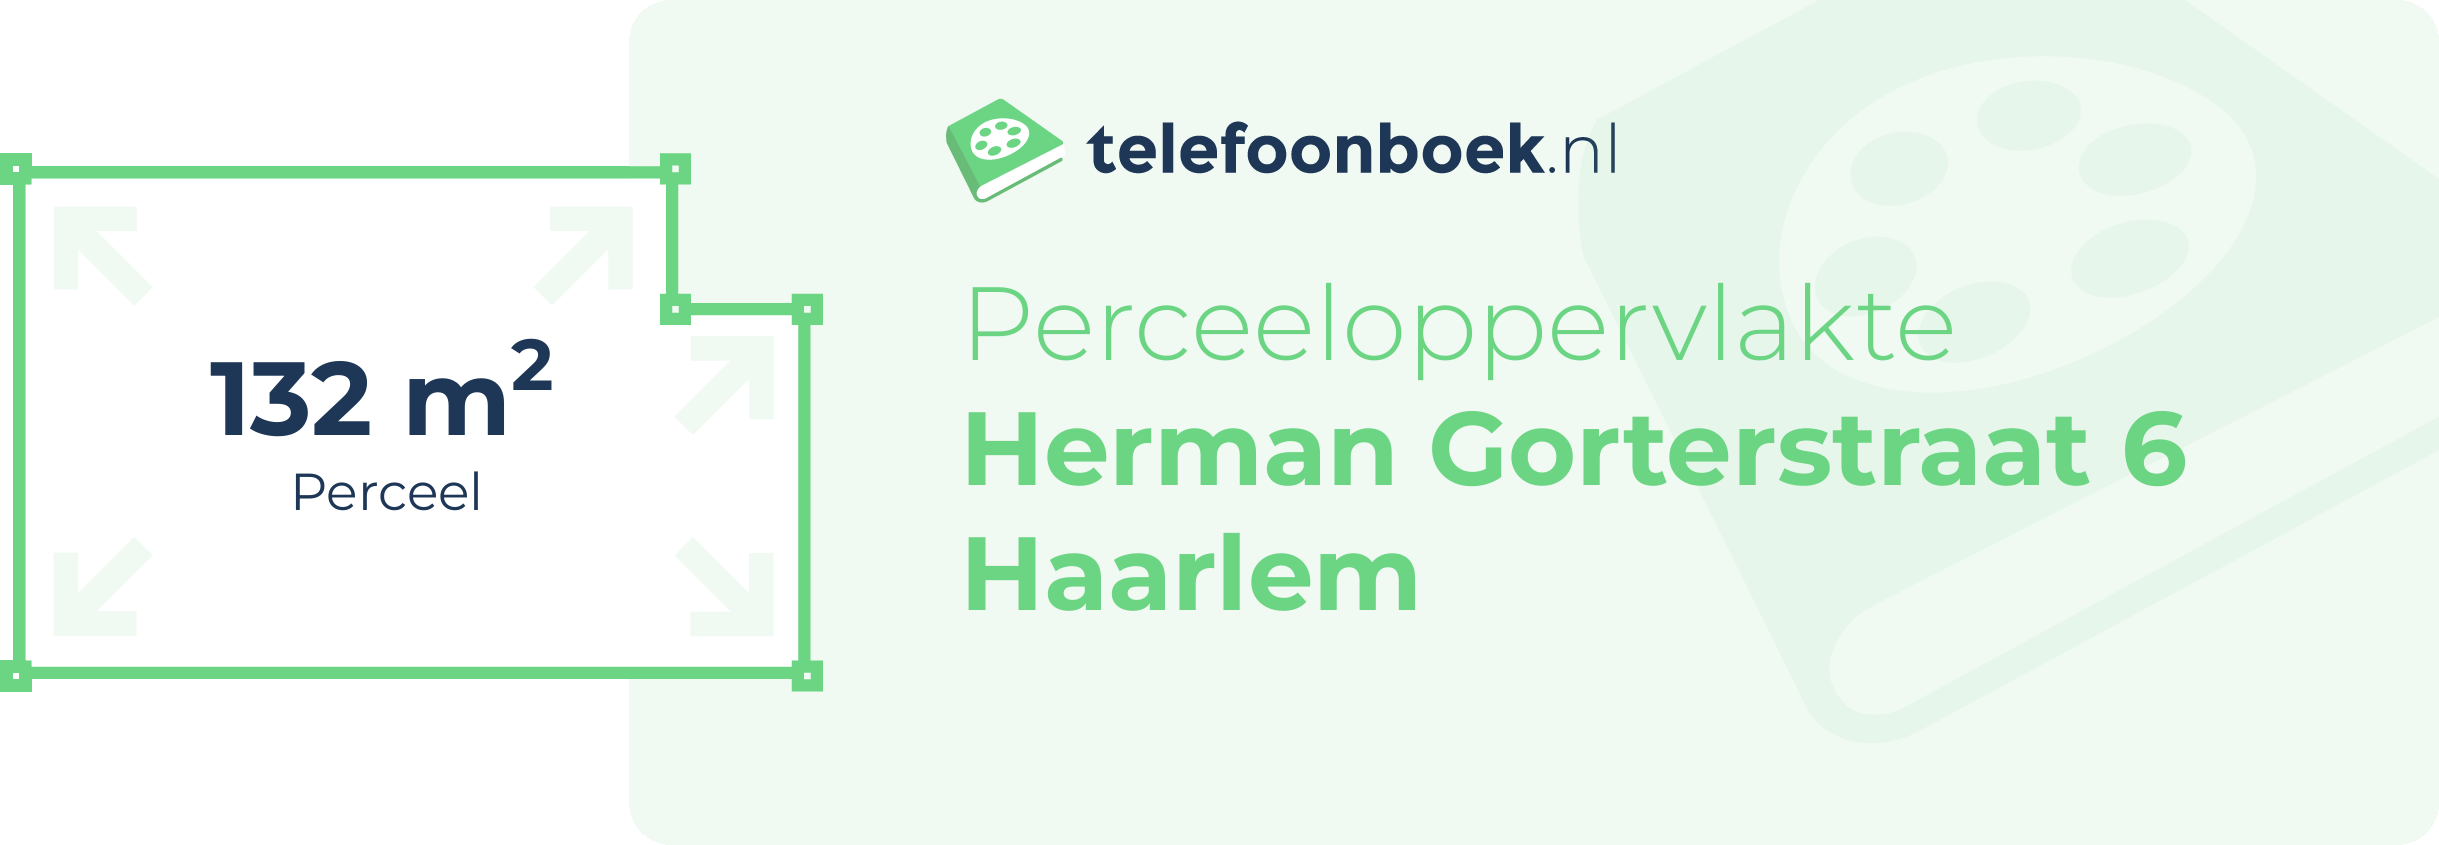 Perceeloppervlakte Herman Gorterstraat 6 Haarlem